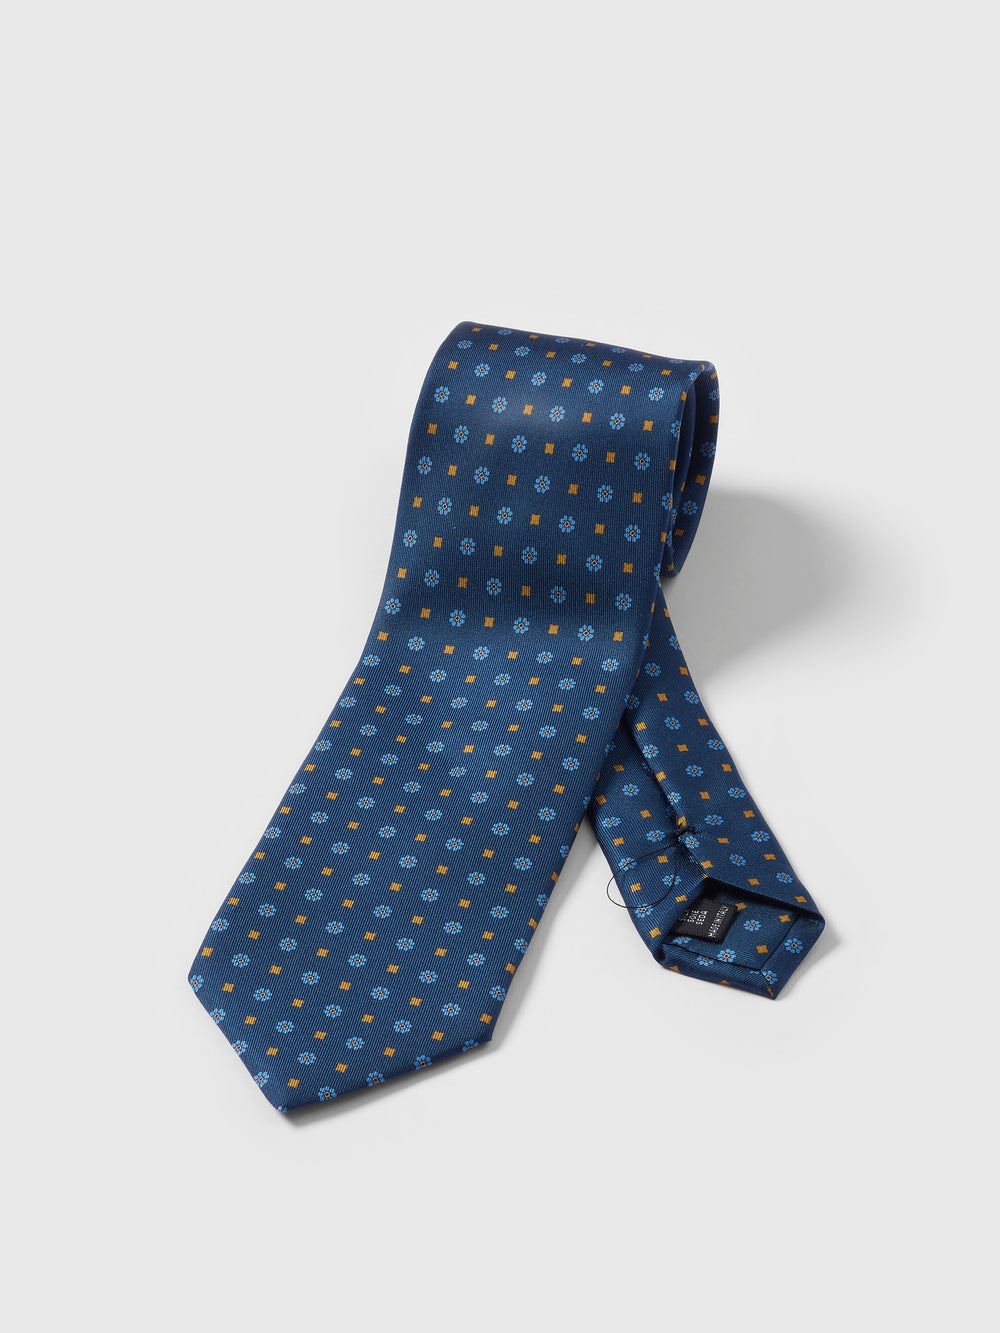 Blue Handmade Printed Tie